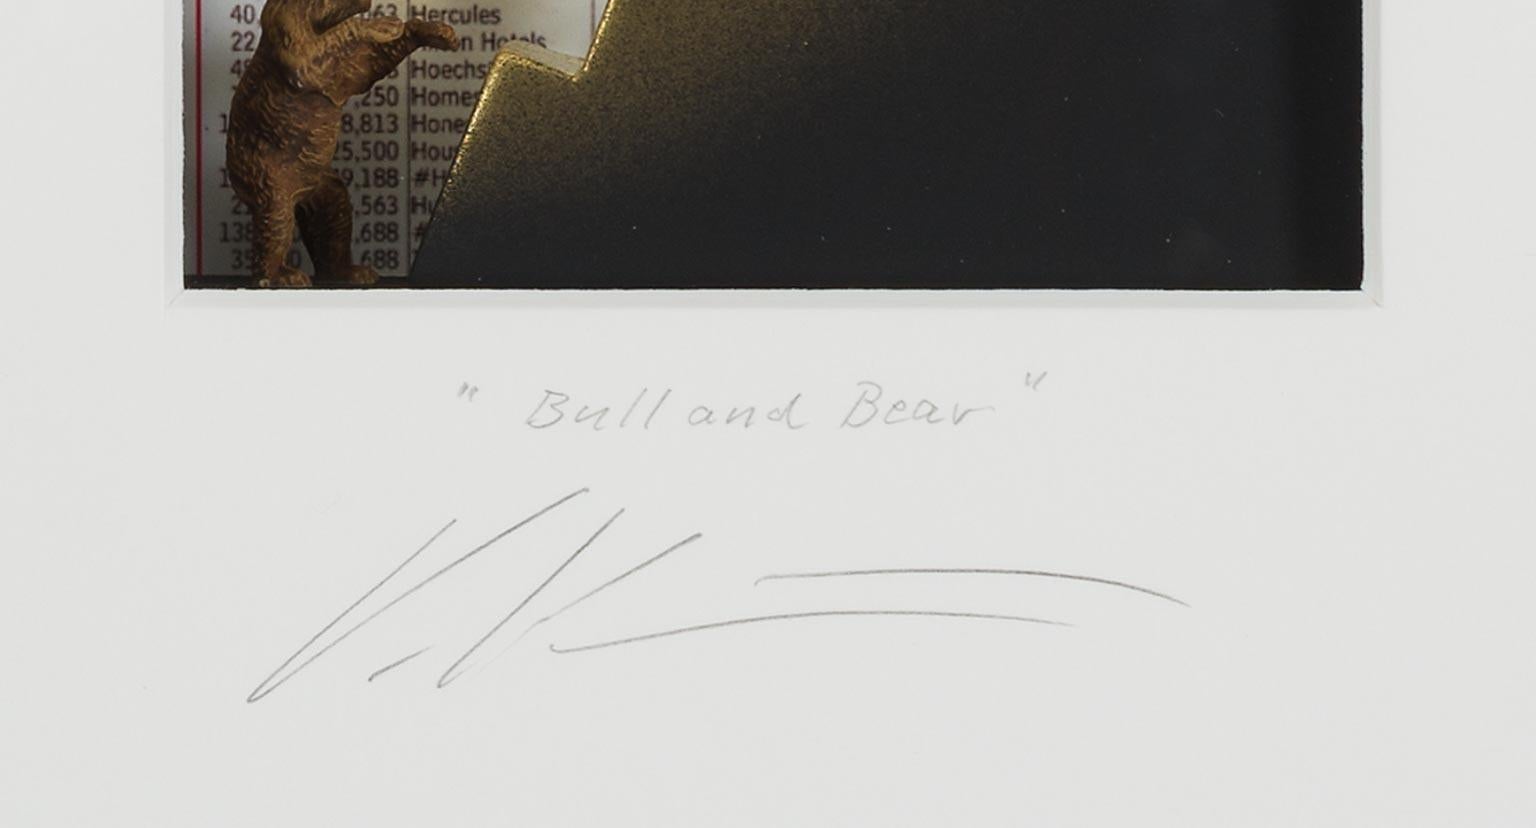 Bull&Bear - contemporary art in boxes artwork of the stock market byVolker Kuhn  For Sale 2